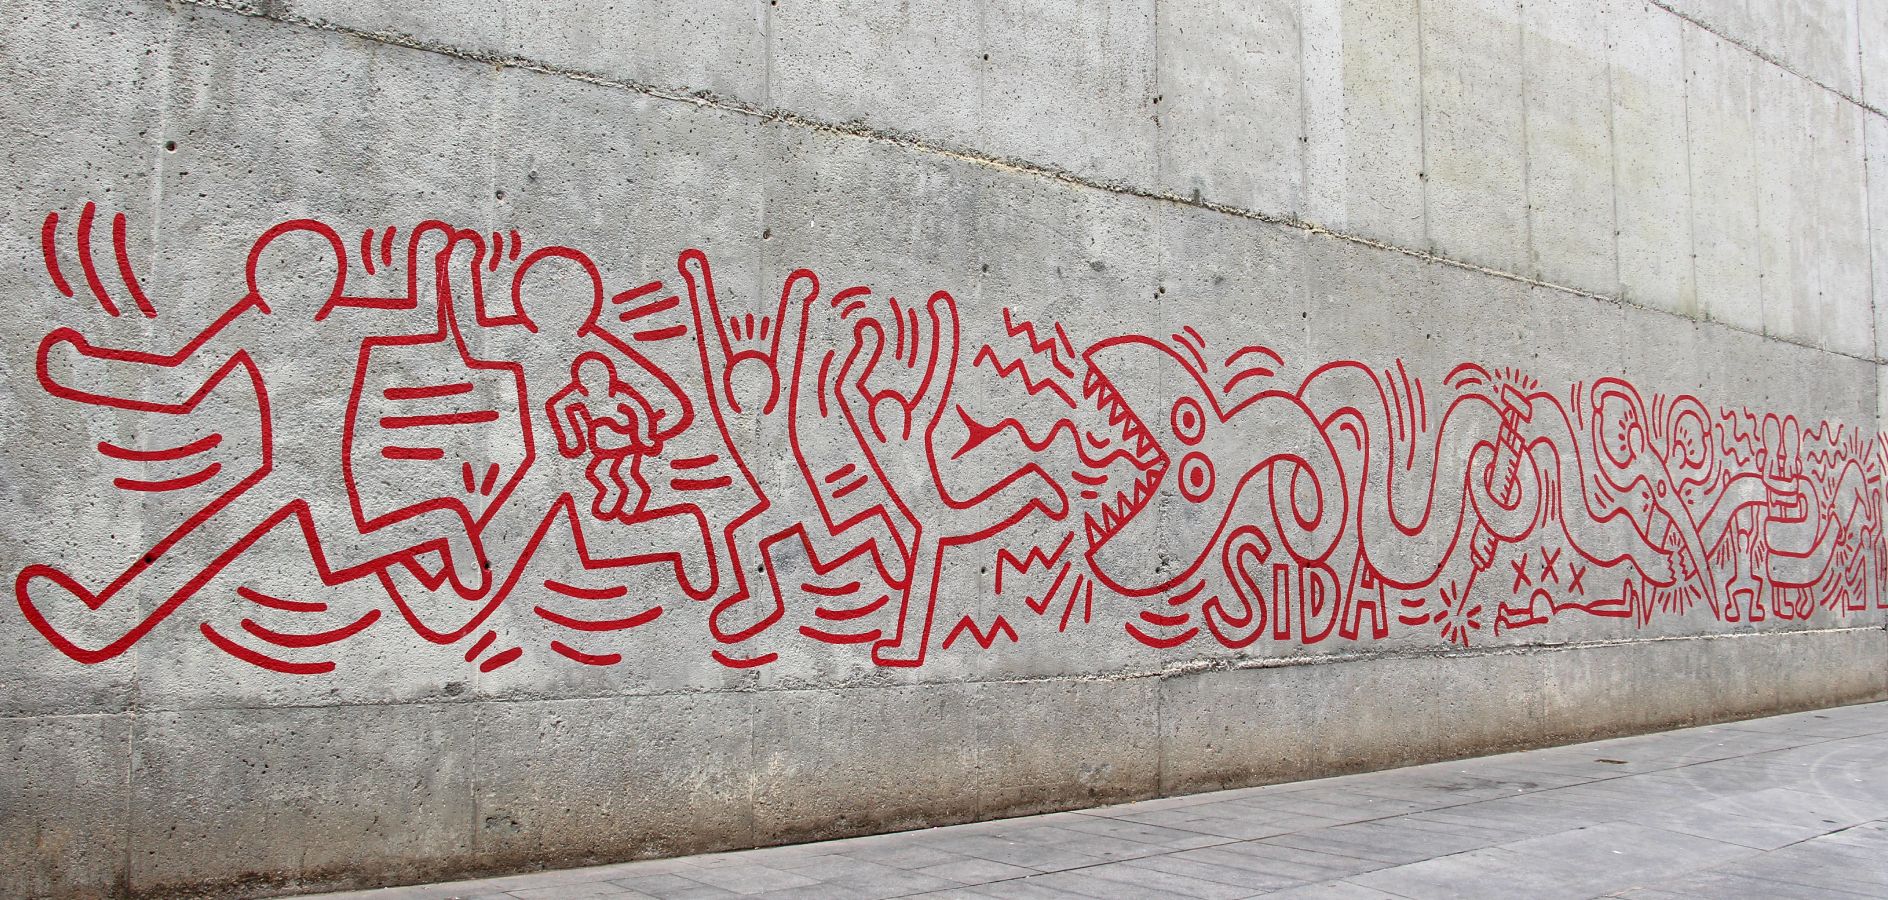 Rutas para descubrir el arte urbano en Barcelona